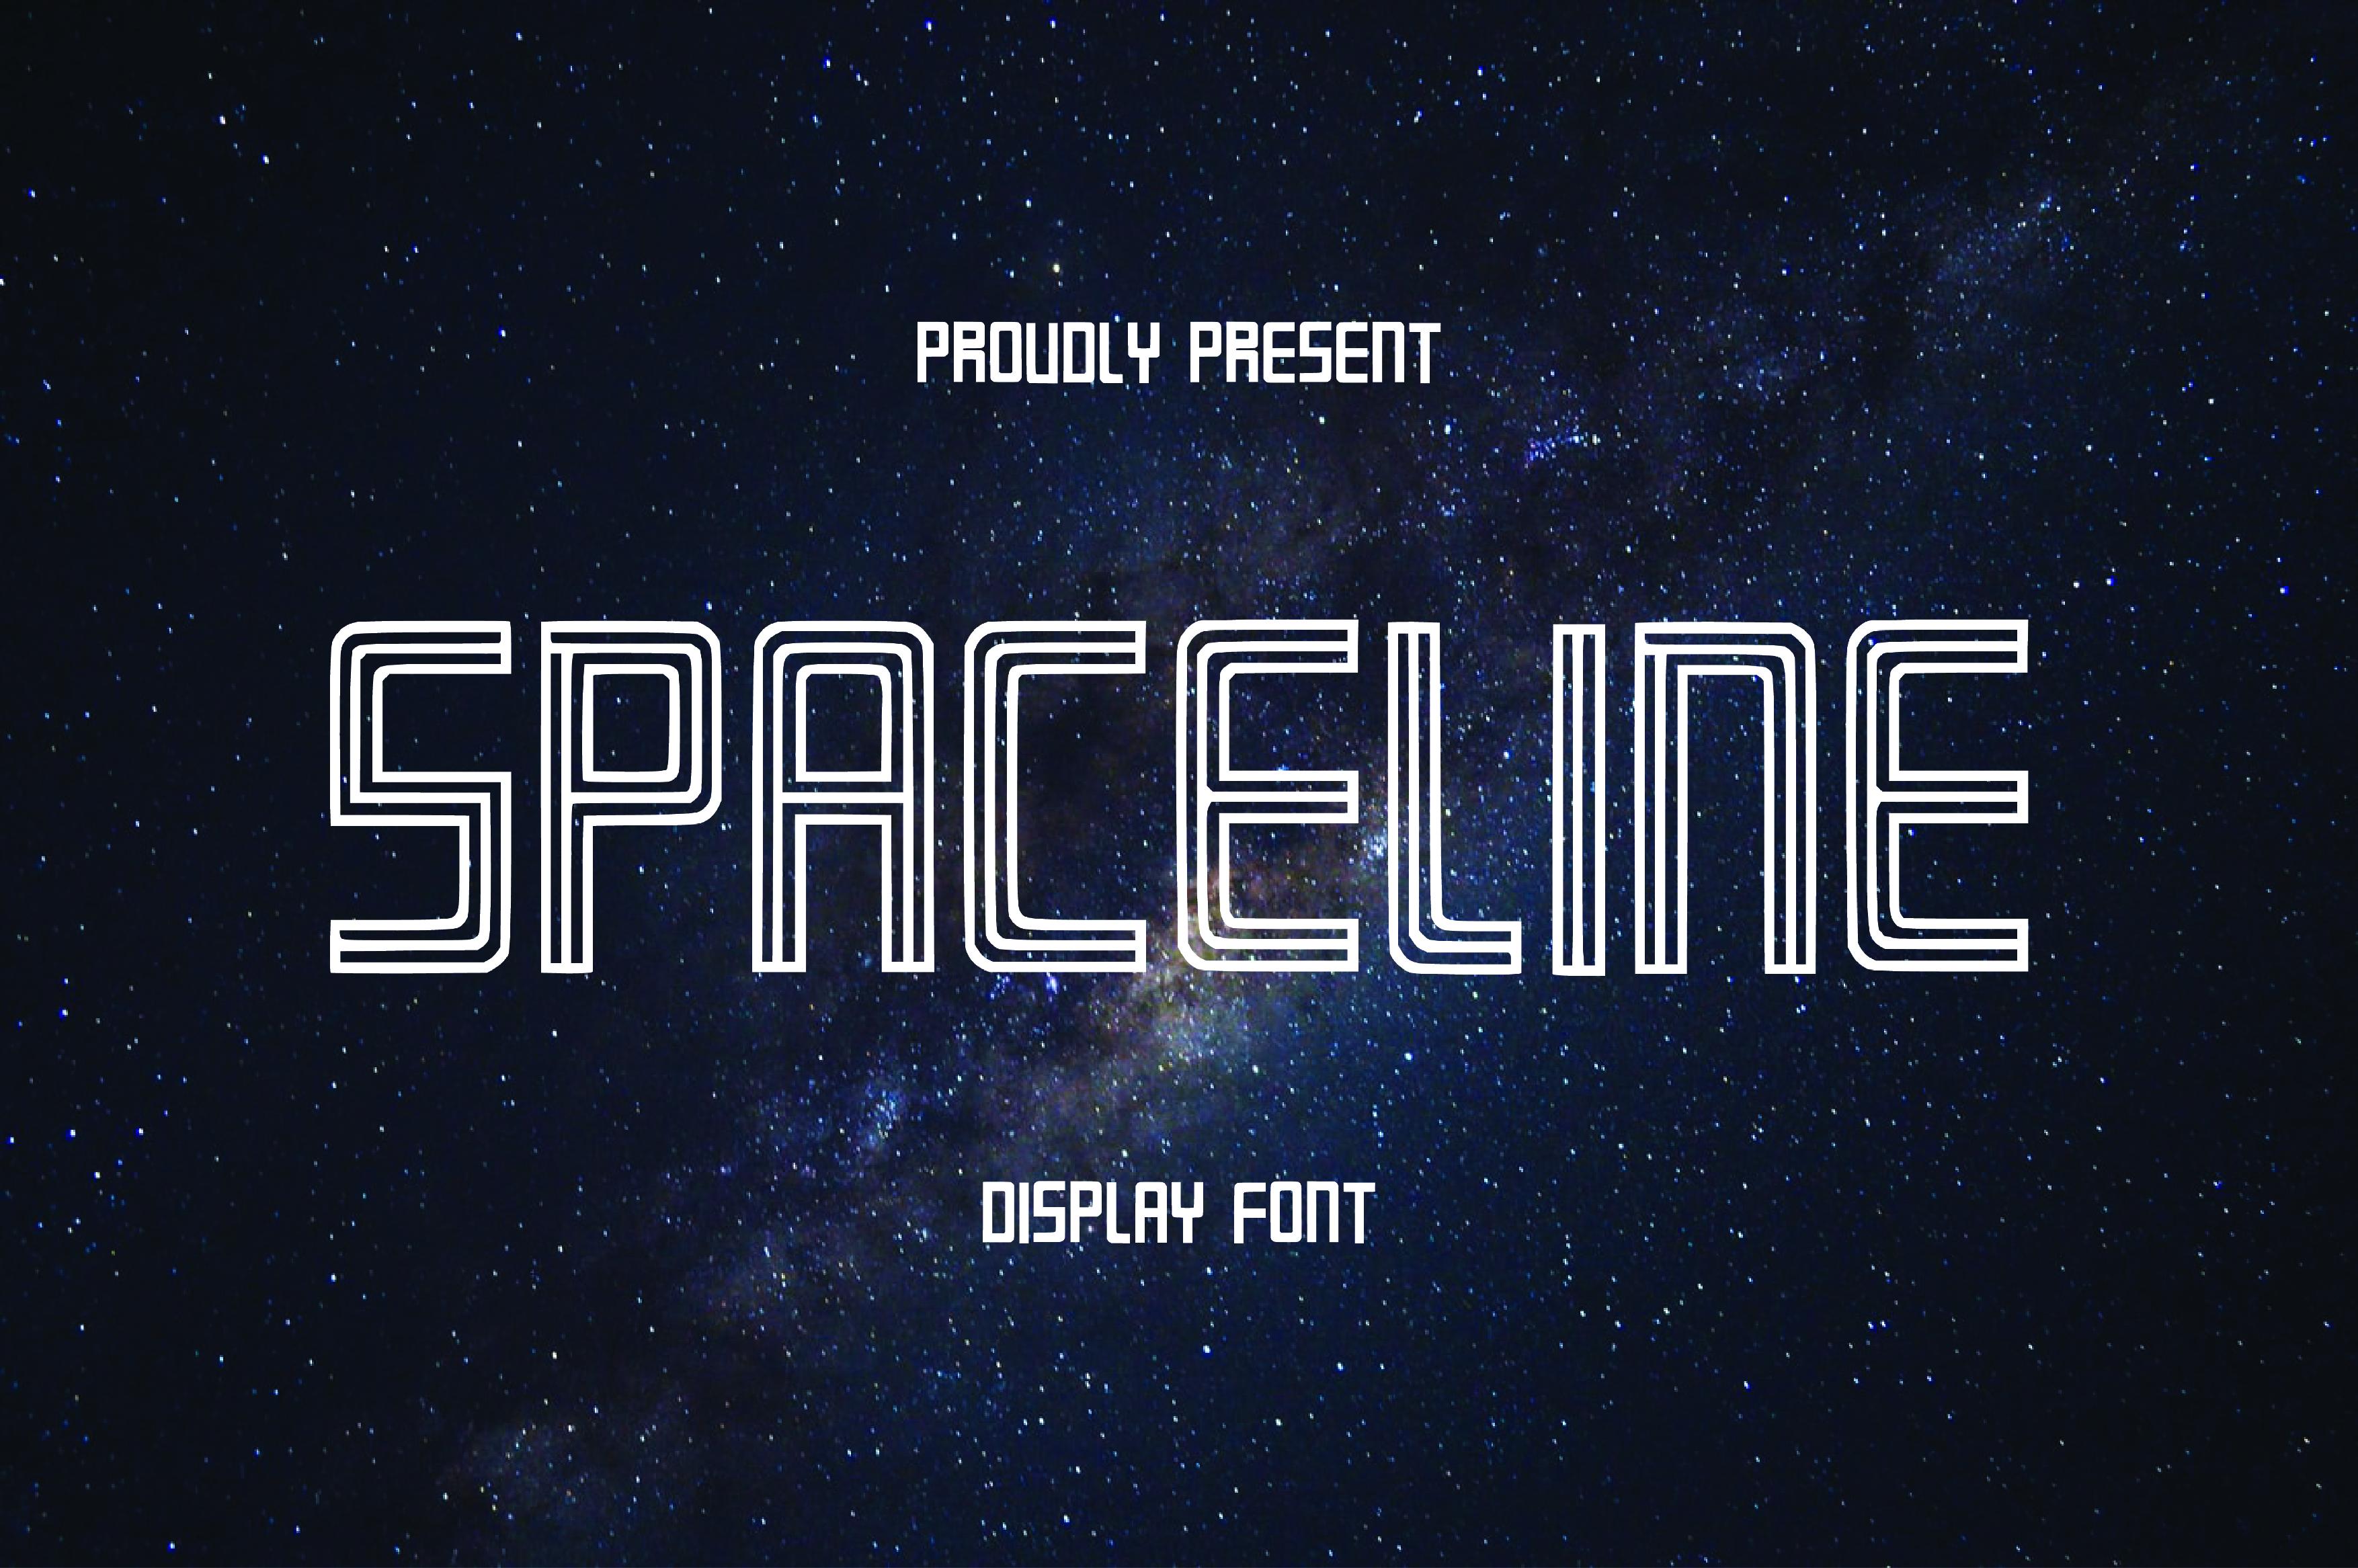 Spaceline Font